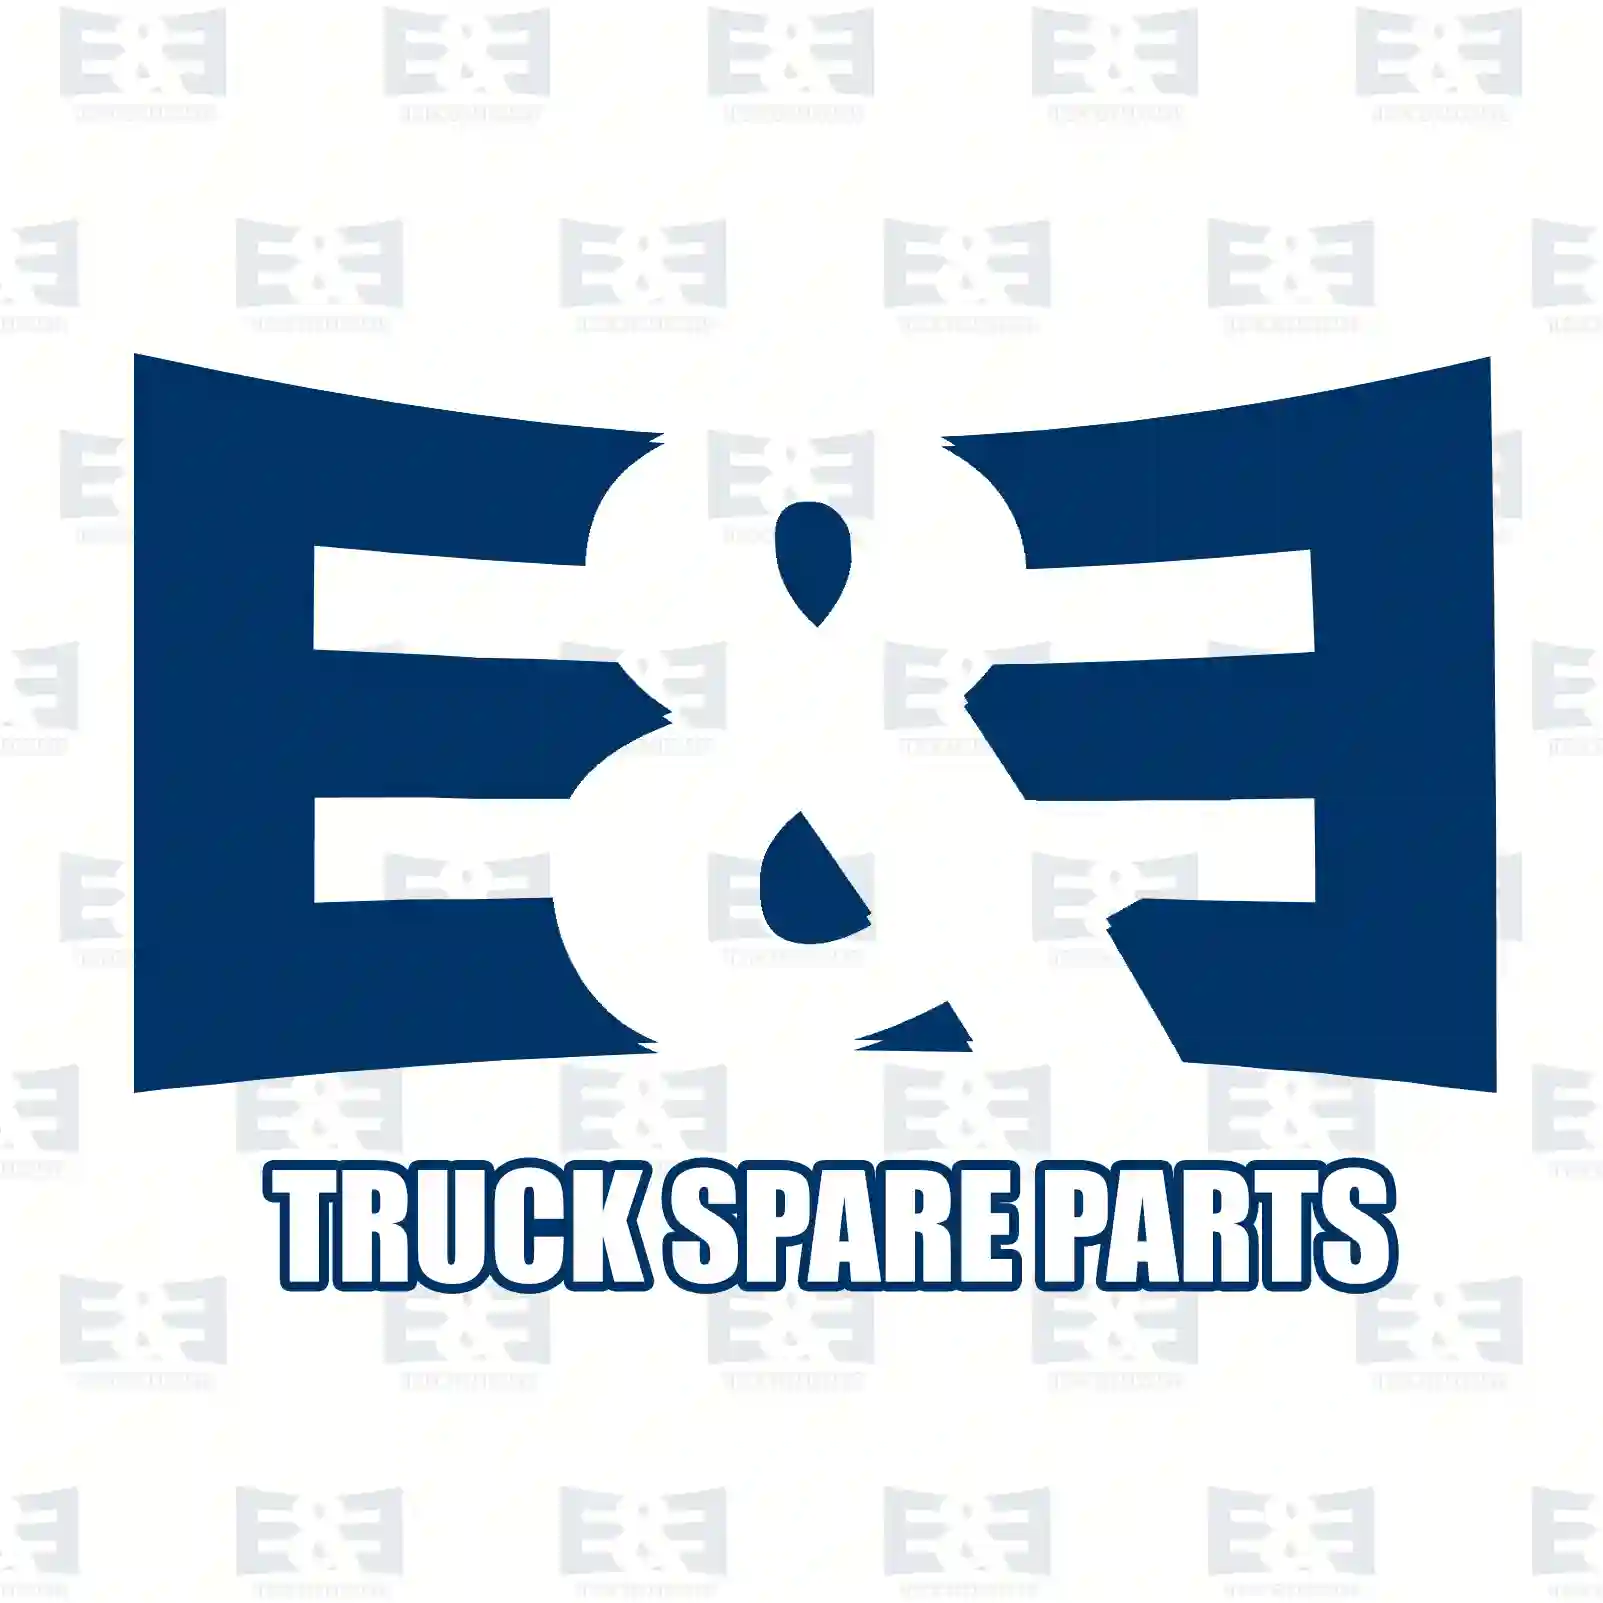 Clutch kit, 2E2288973, 81303050232S ||  2E2288973 E&E Truck Spare Parts | Truck Spare Parts, Auotomotive Spare Parts Clutch kit, 2E2288973, 81303050232S ||  2E2288973 E&E Truck Spare Parts | Truck Spare Parts, Auotomotive Spare Parts